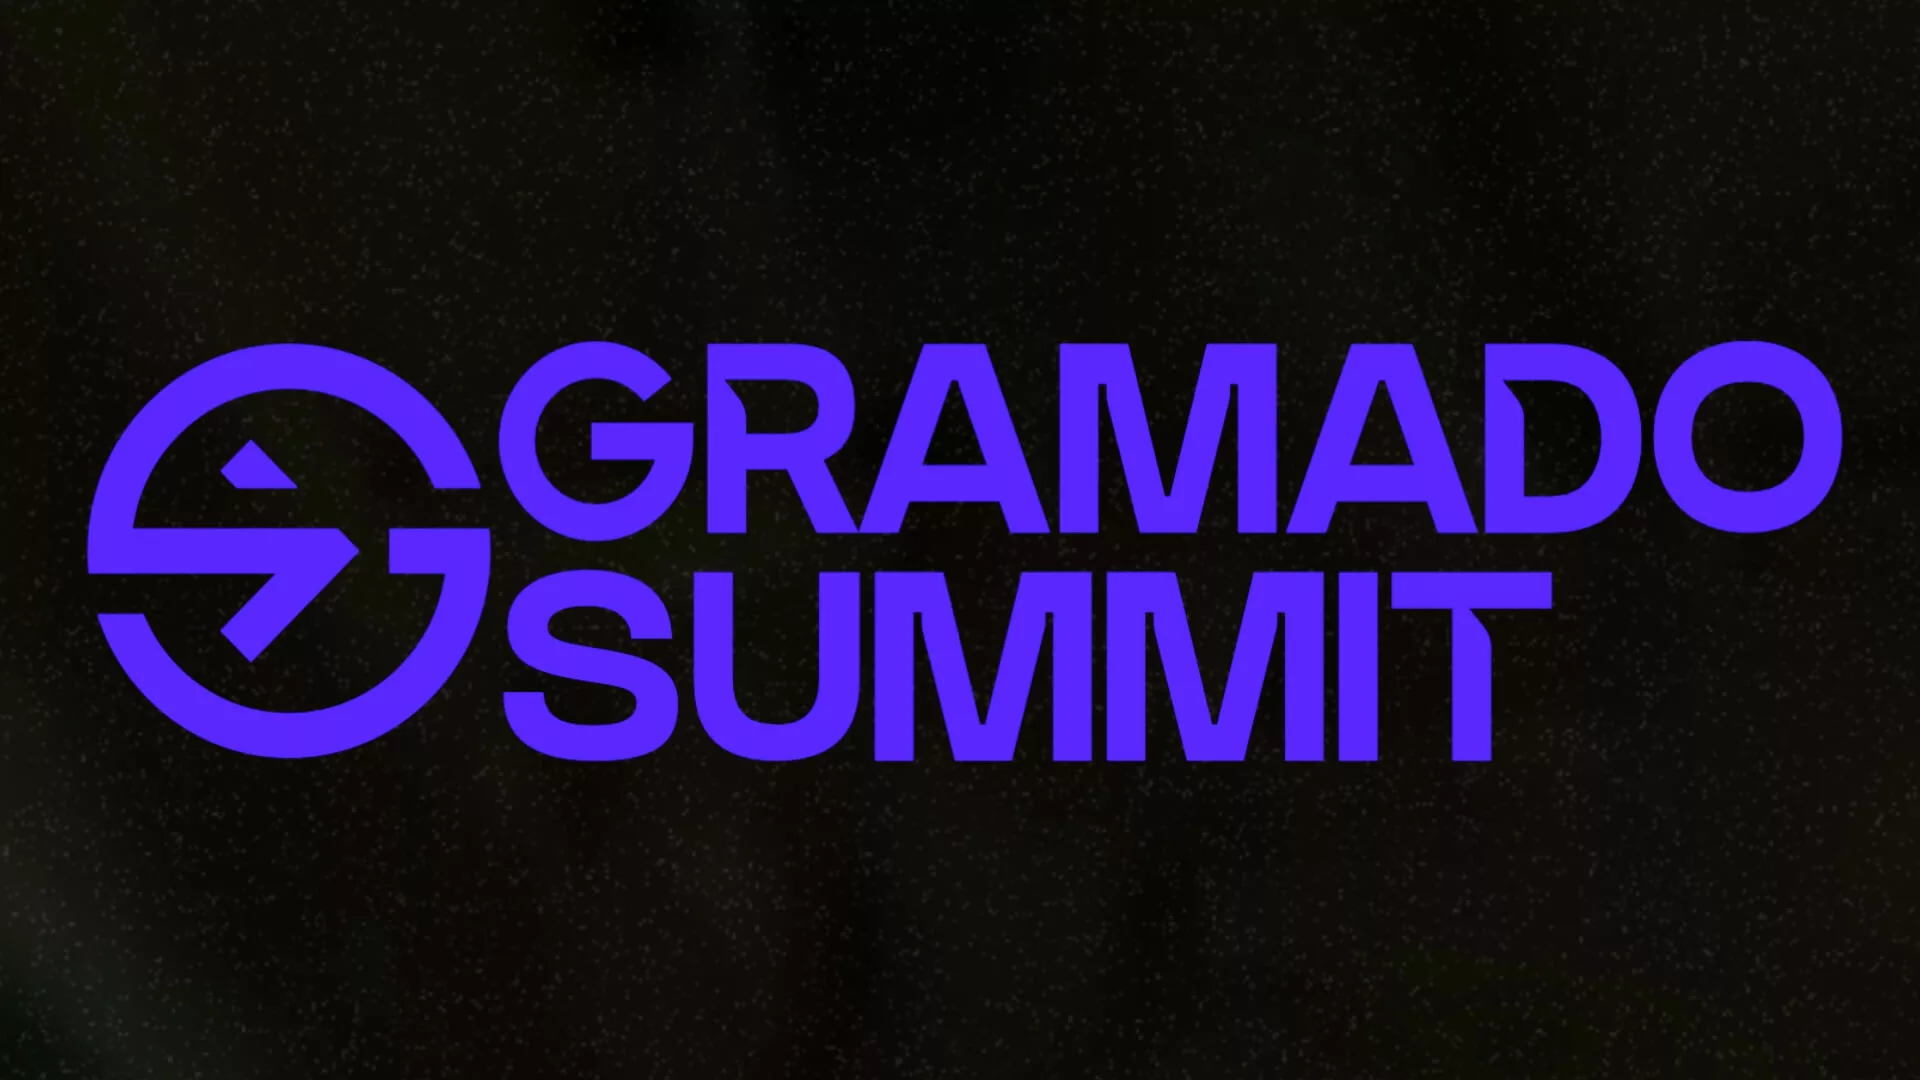 Gramado Summit promete imersão no universo da inovação com mais de 400 palestrantes